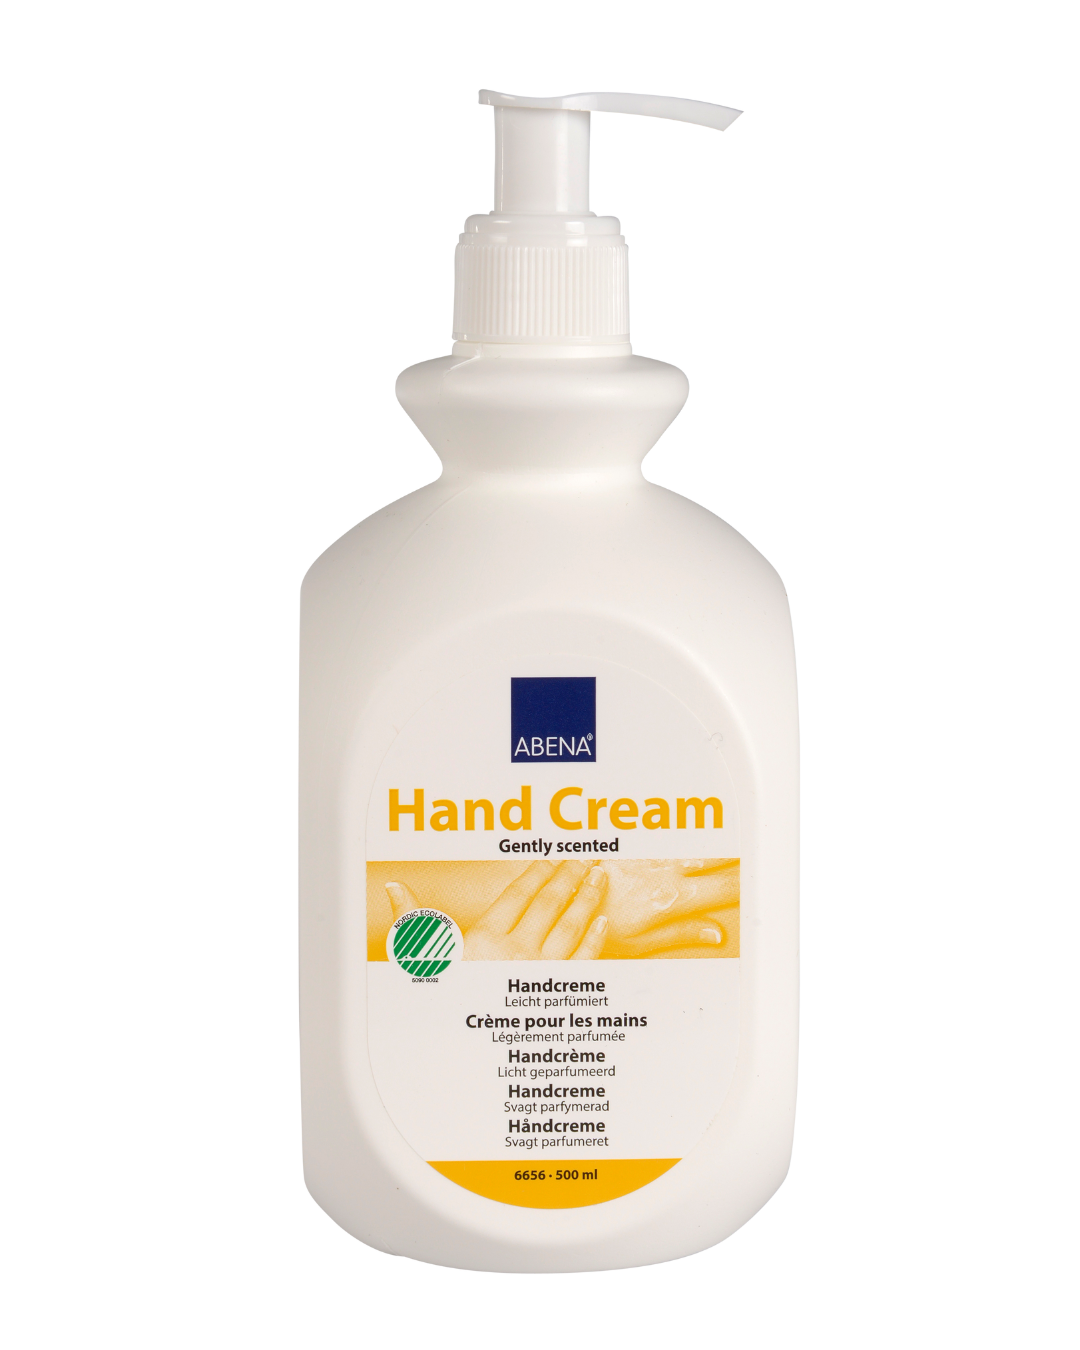 Hand Cream with perfume - 500ml (21% lipids)